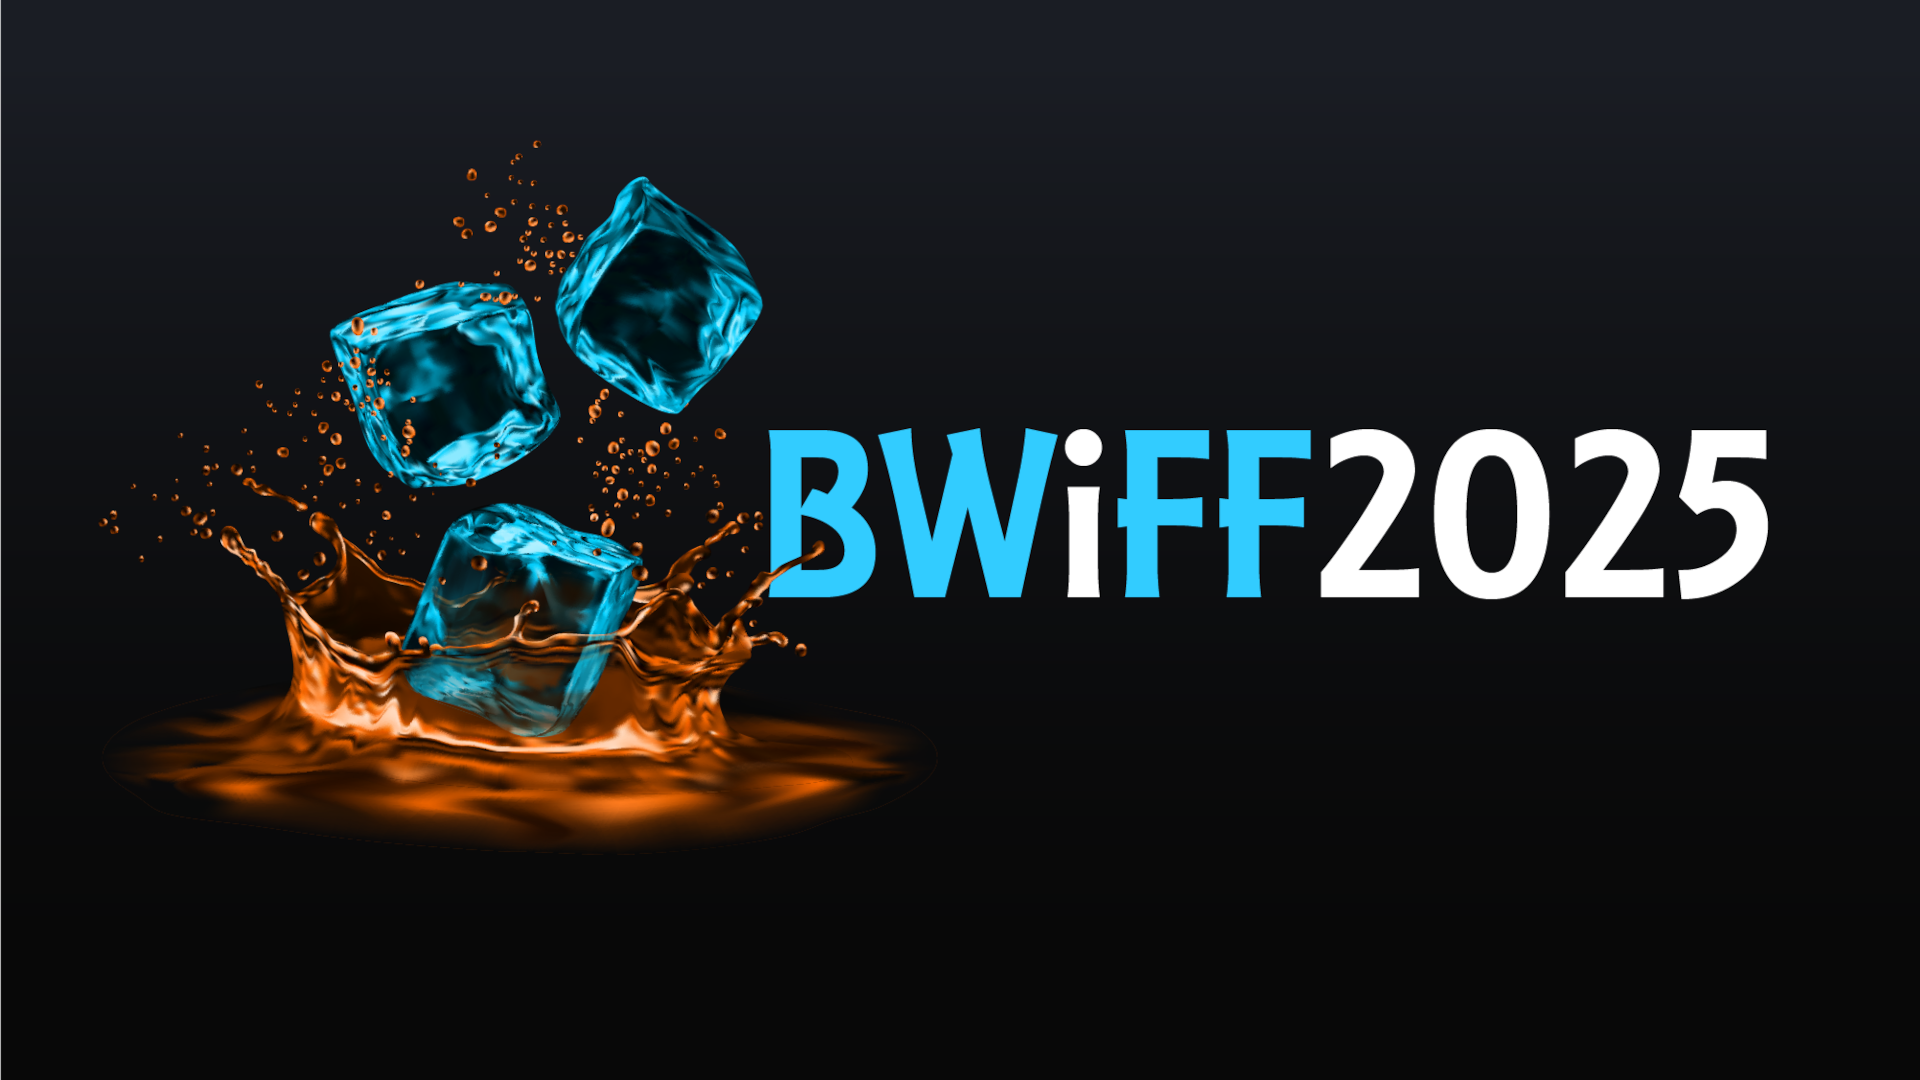 BWiFF 2025